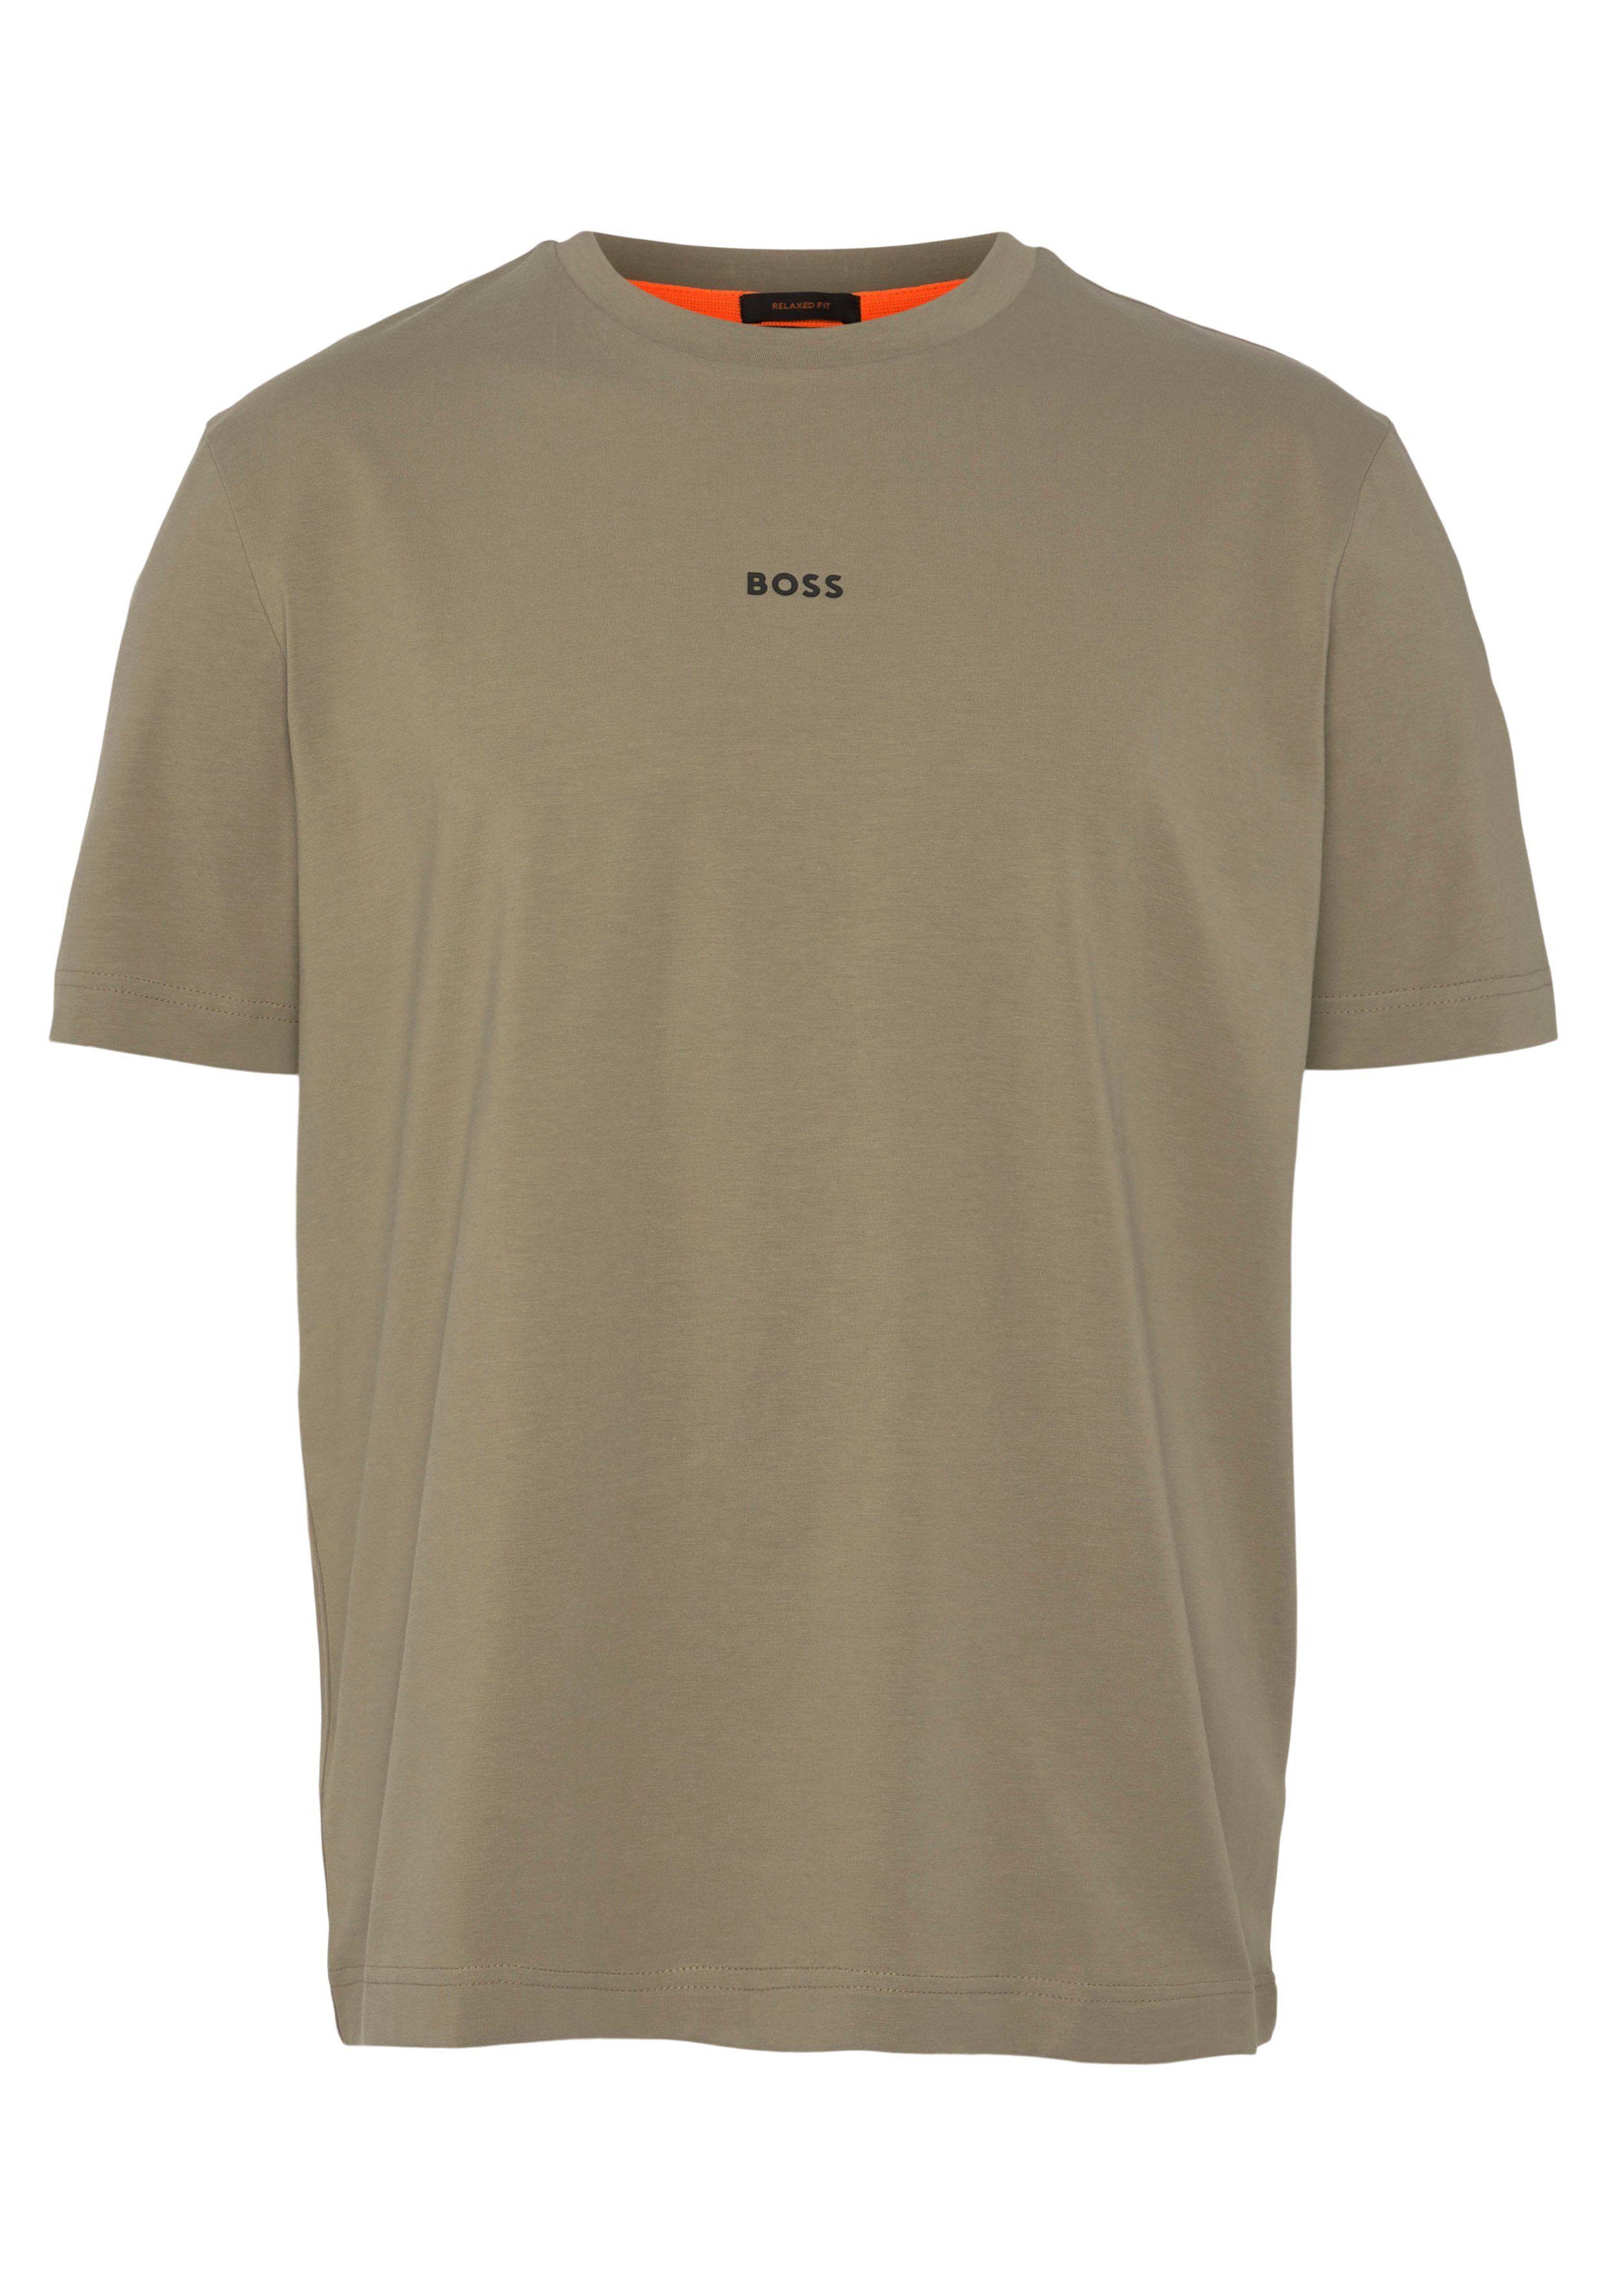 Kurzarmshirt BOSS-Logodruck BOSS auf Brust light/Pastell_green2 ORANGE mit TChup der